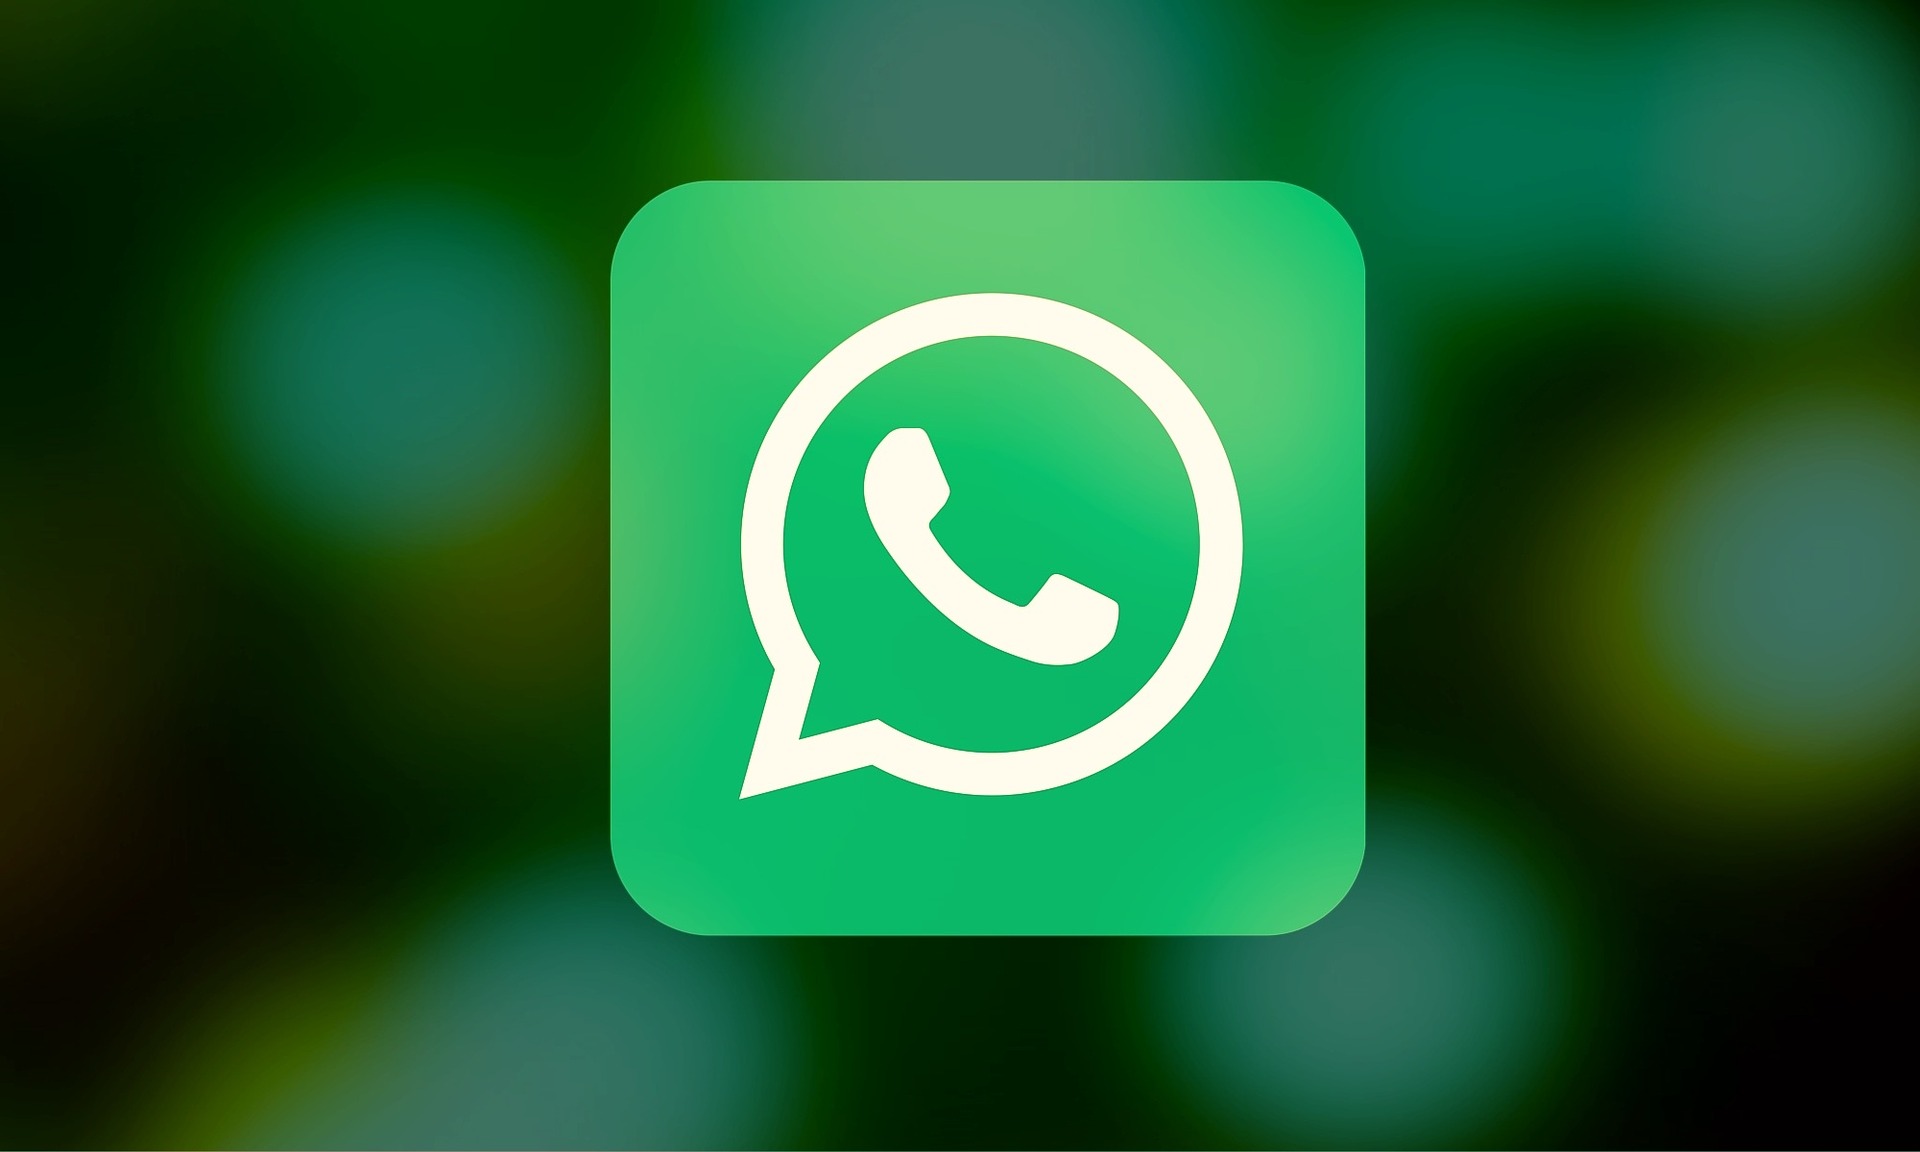  WhatsApp va lancer une fonctionnalité pour empêcher vos amis de lire vos messages